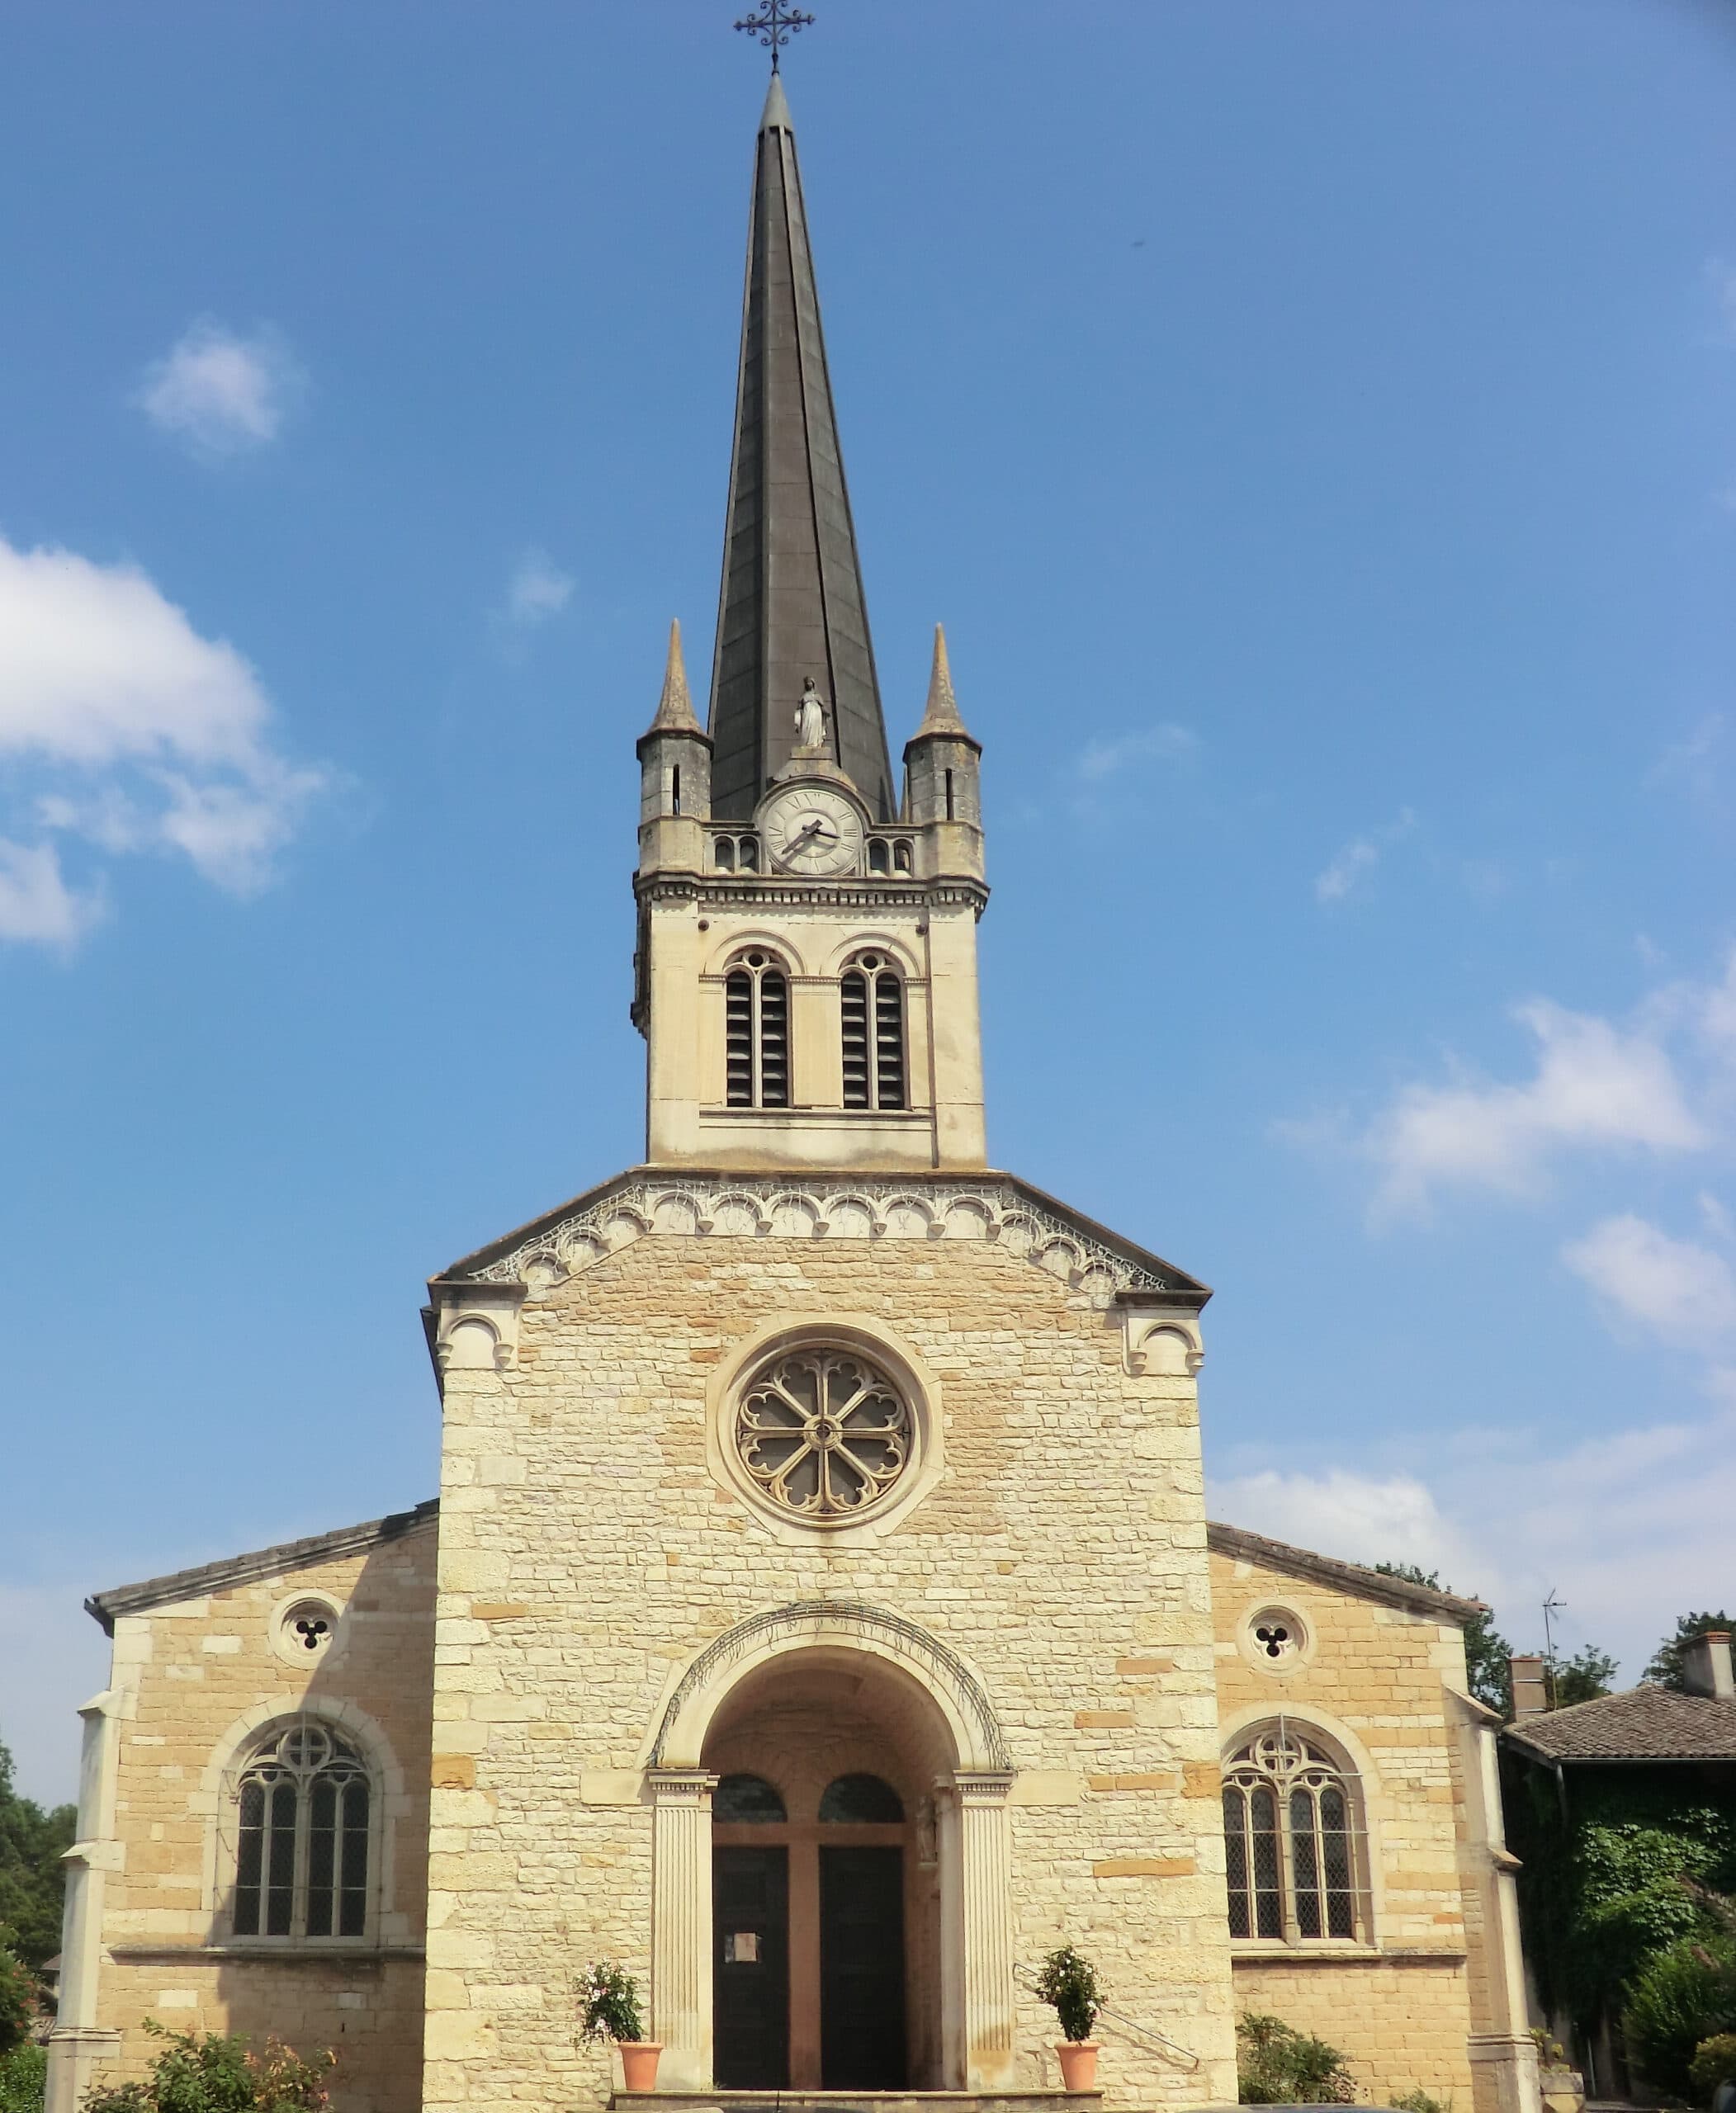 The parish church in Fareins.